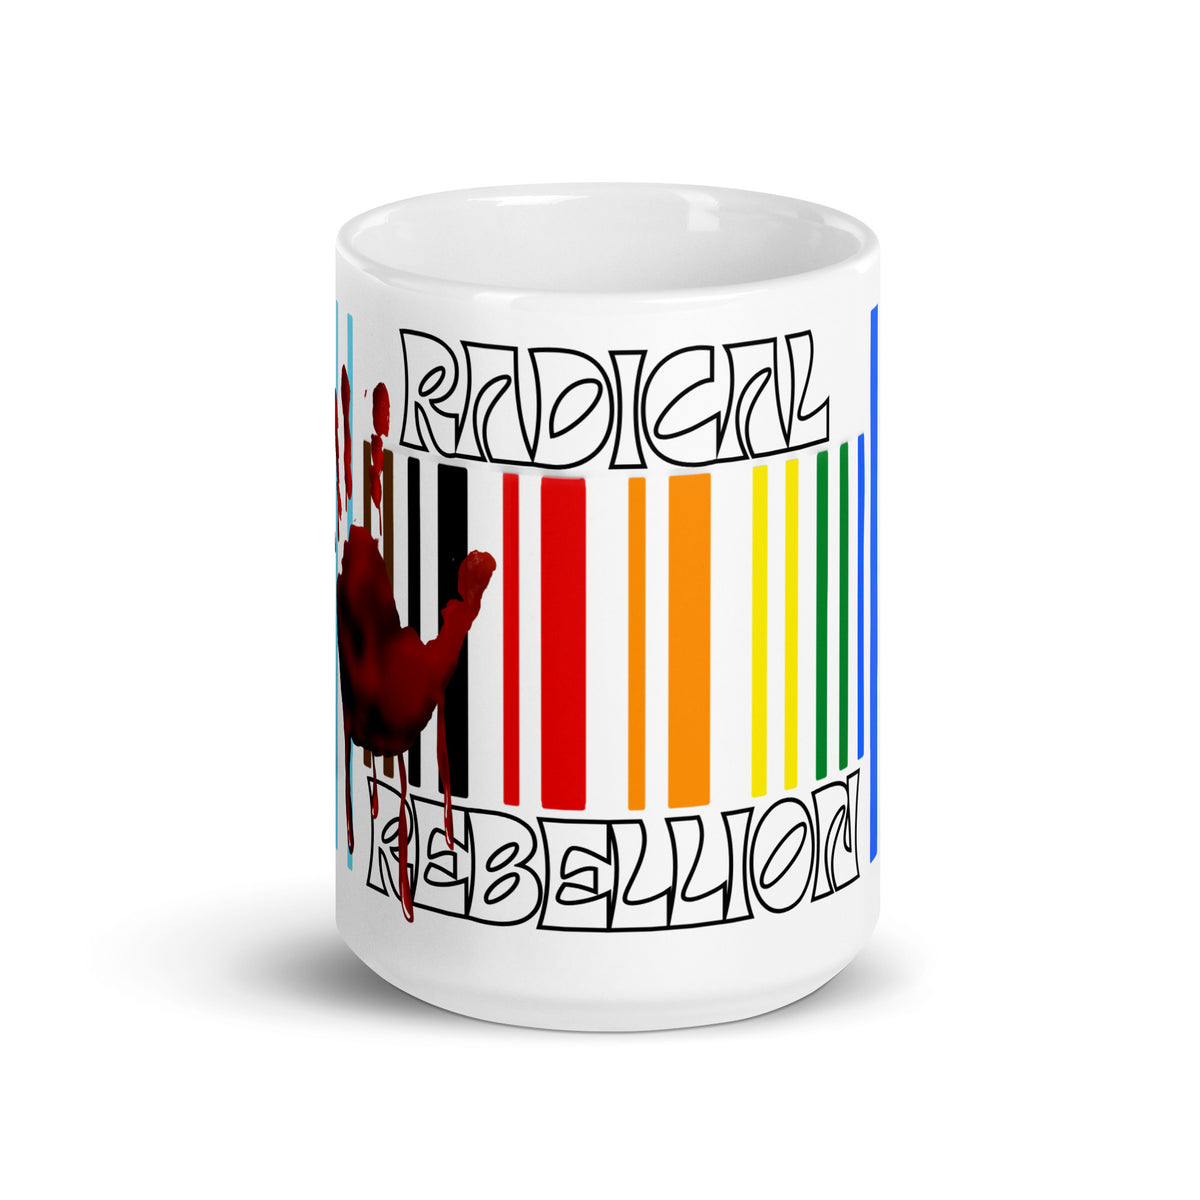 Radical Rainbow Rebellion Mug - mug - Twisted Jezebel